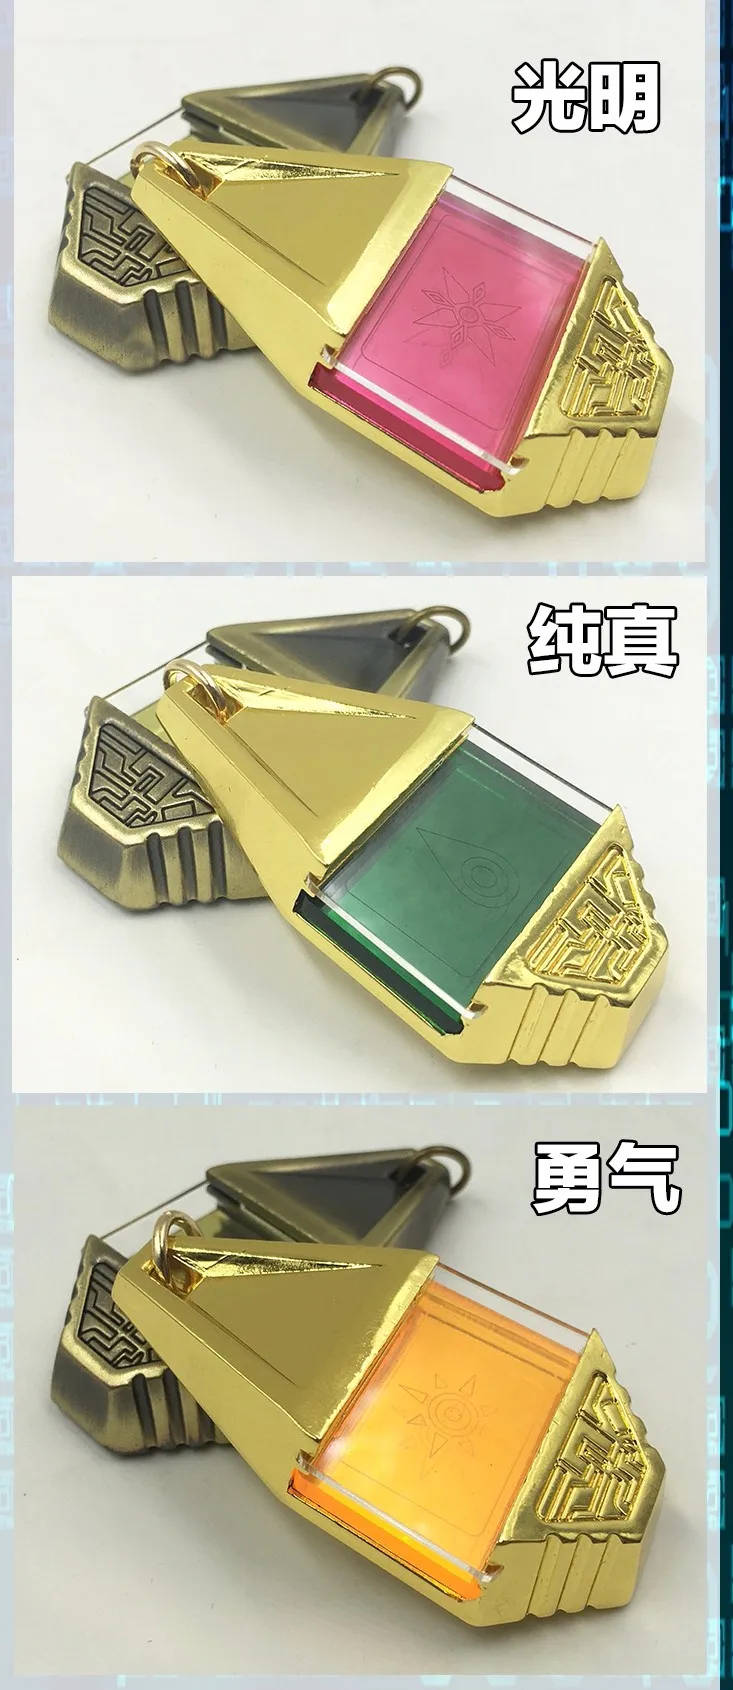 Цифровой Монстр классический сувенир кулон набор золотой/Бронзовый Digimon кулон "Приключение" Коллекция значок косплея три гребня тег